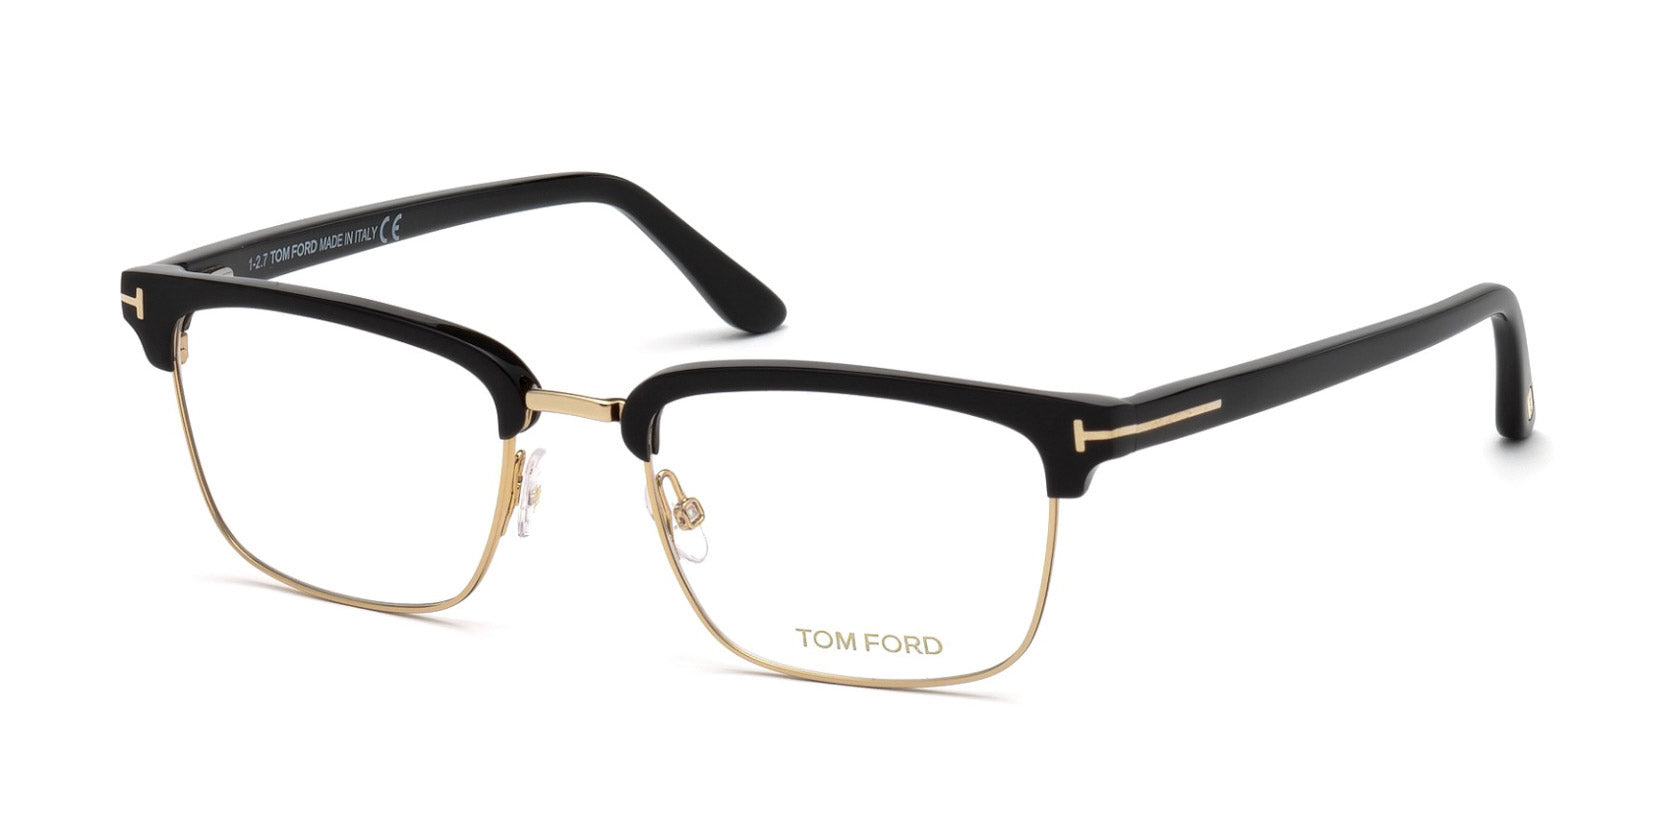 Tom Ford TF5504 Rectangle Glasses | Fashion Eyewear UK